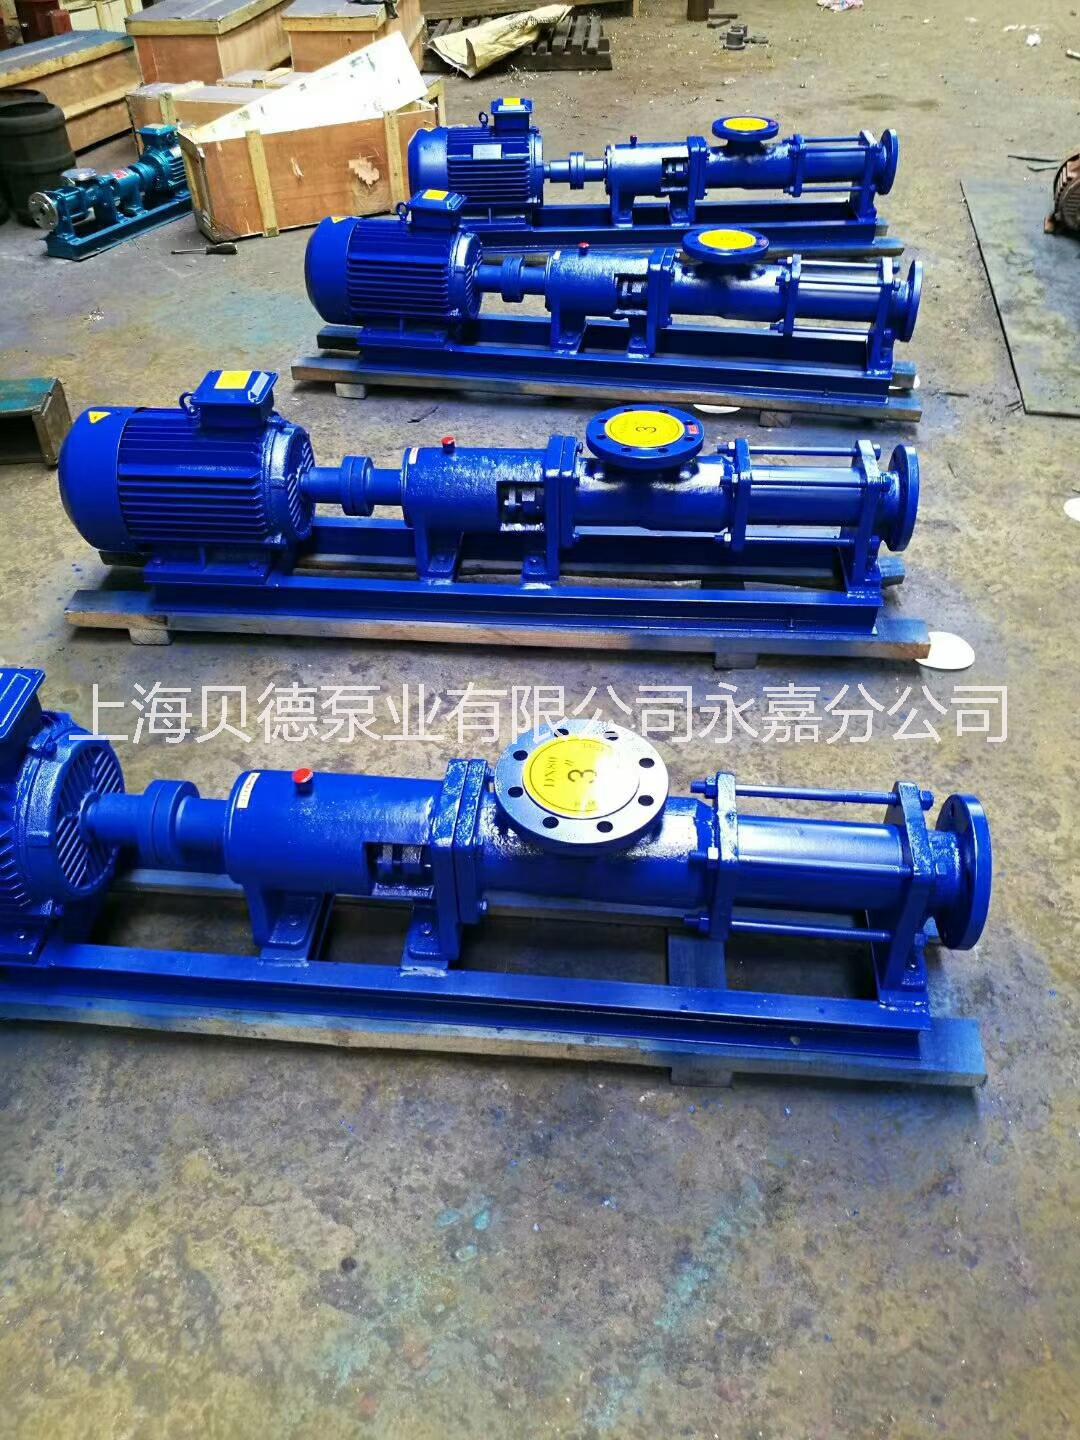 G型单螺杆泵浙江温州螺杆泵厂家螺杆泵价格螺杆泵批发螺杆泵经销商